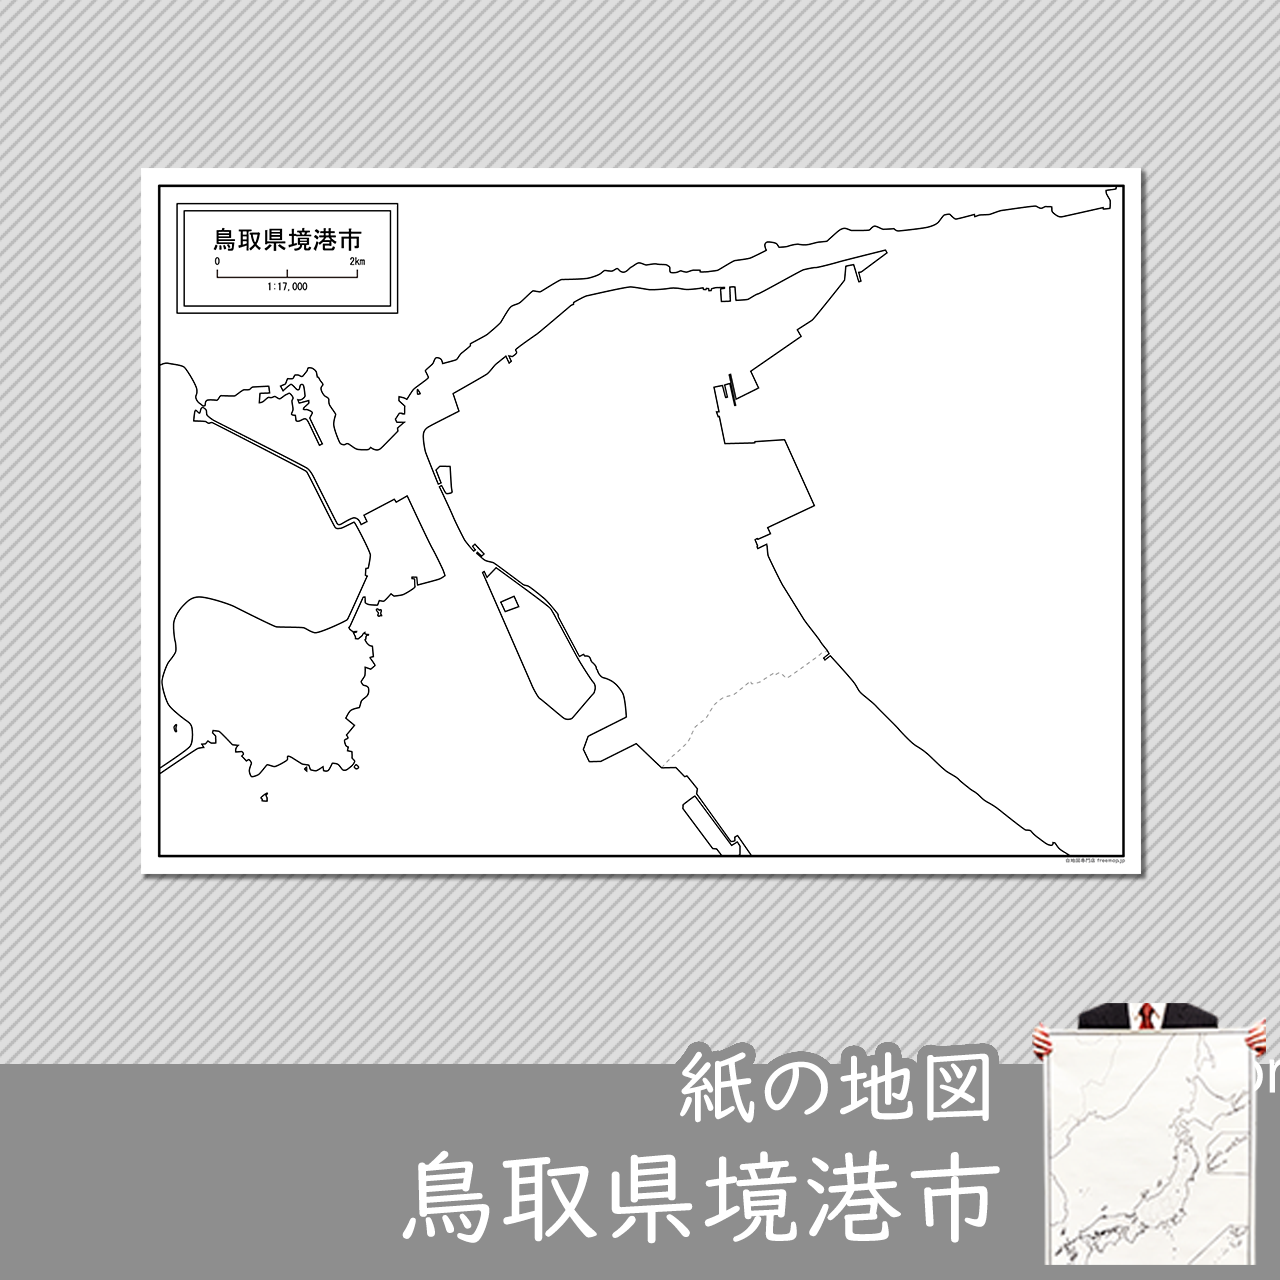 境港市の紙の白地図のサムネイル